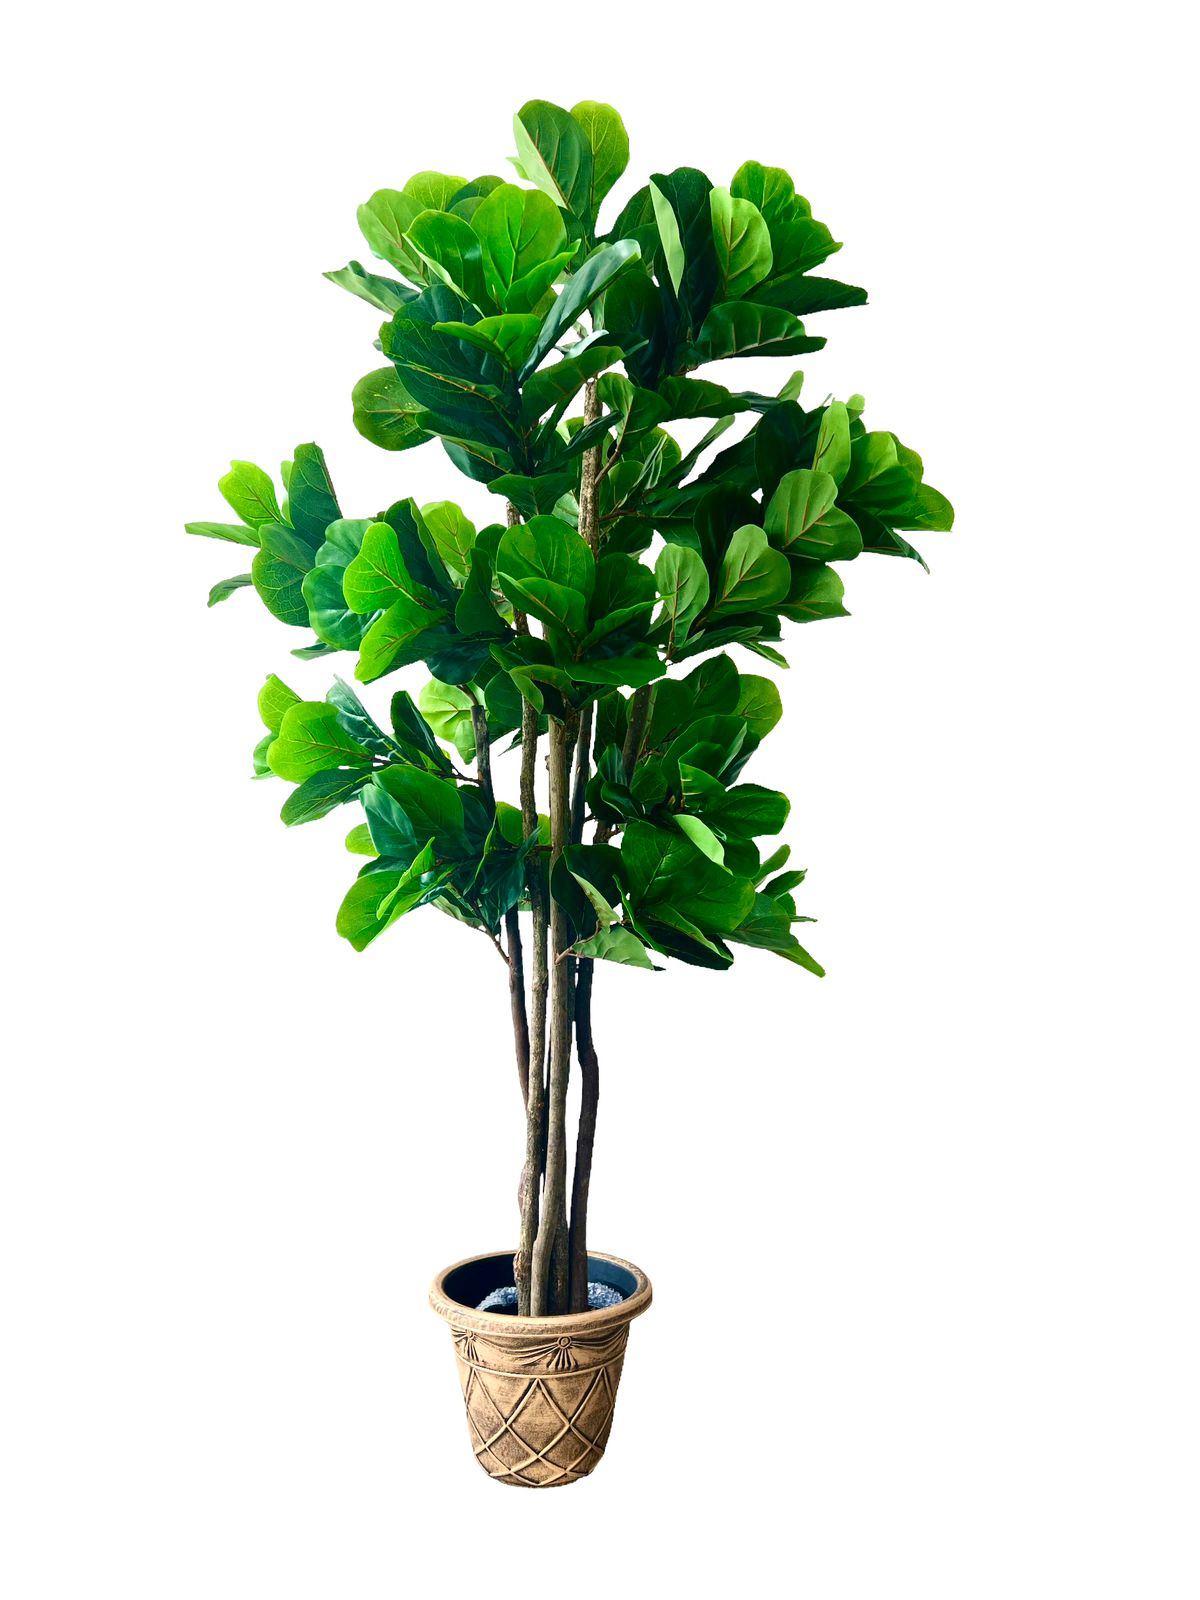 Comprar Árbol de Ficus Artificial